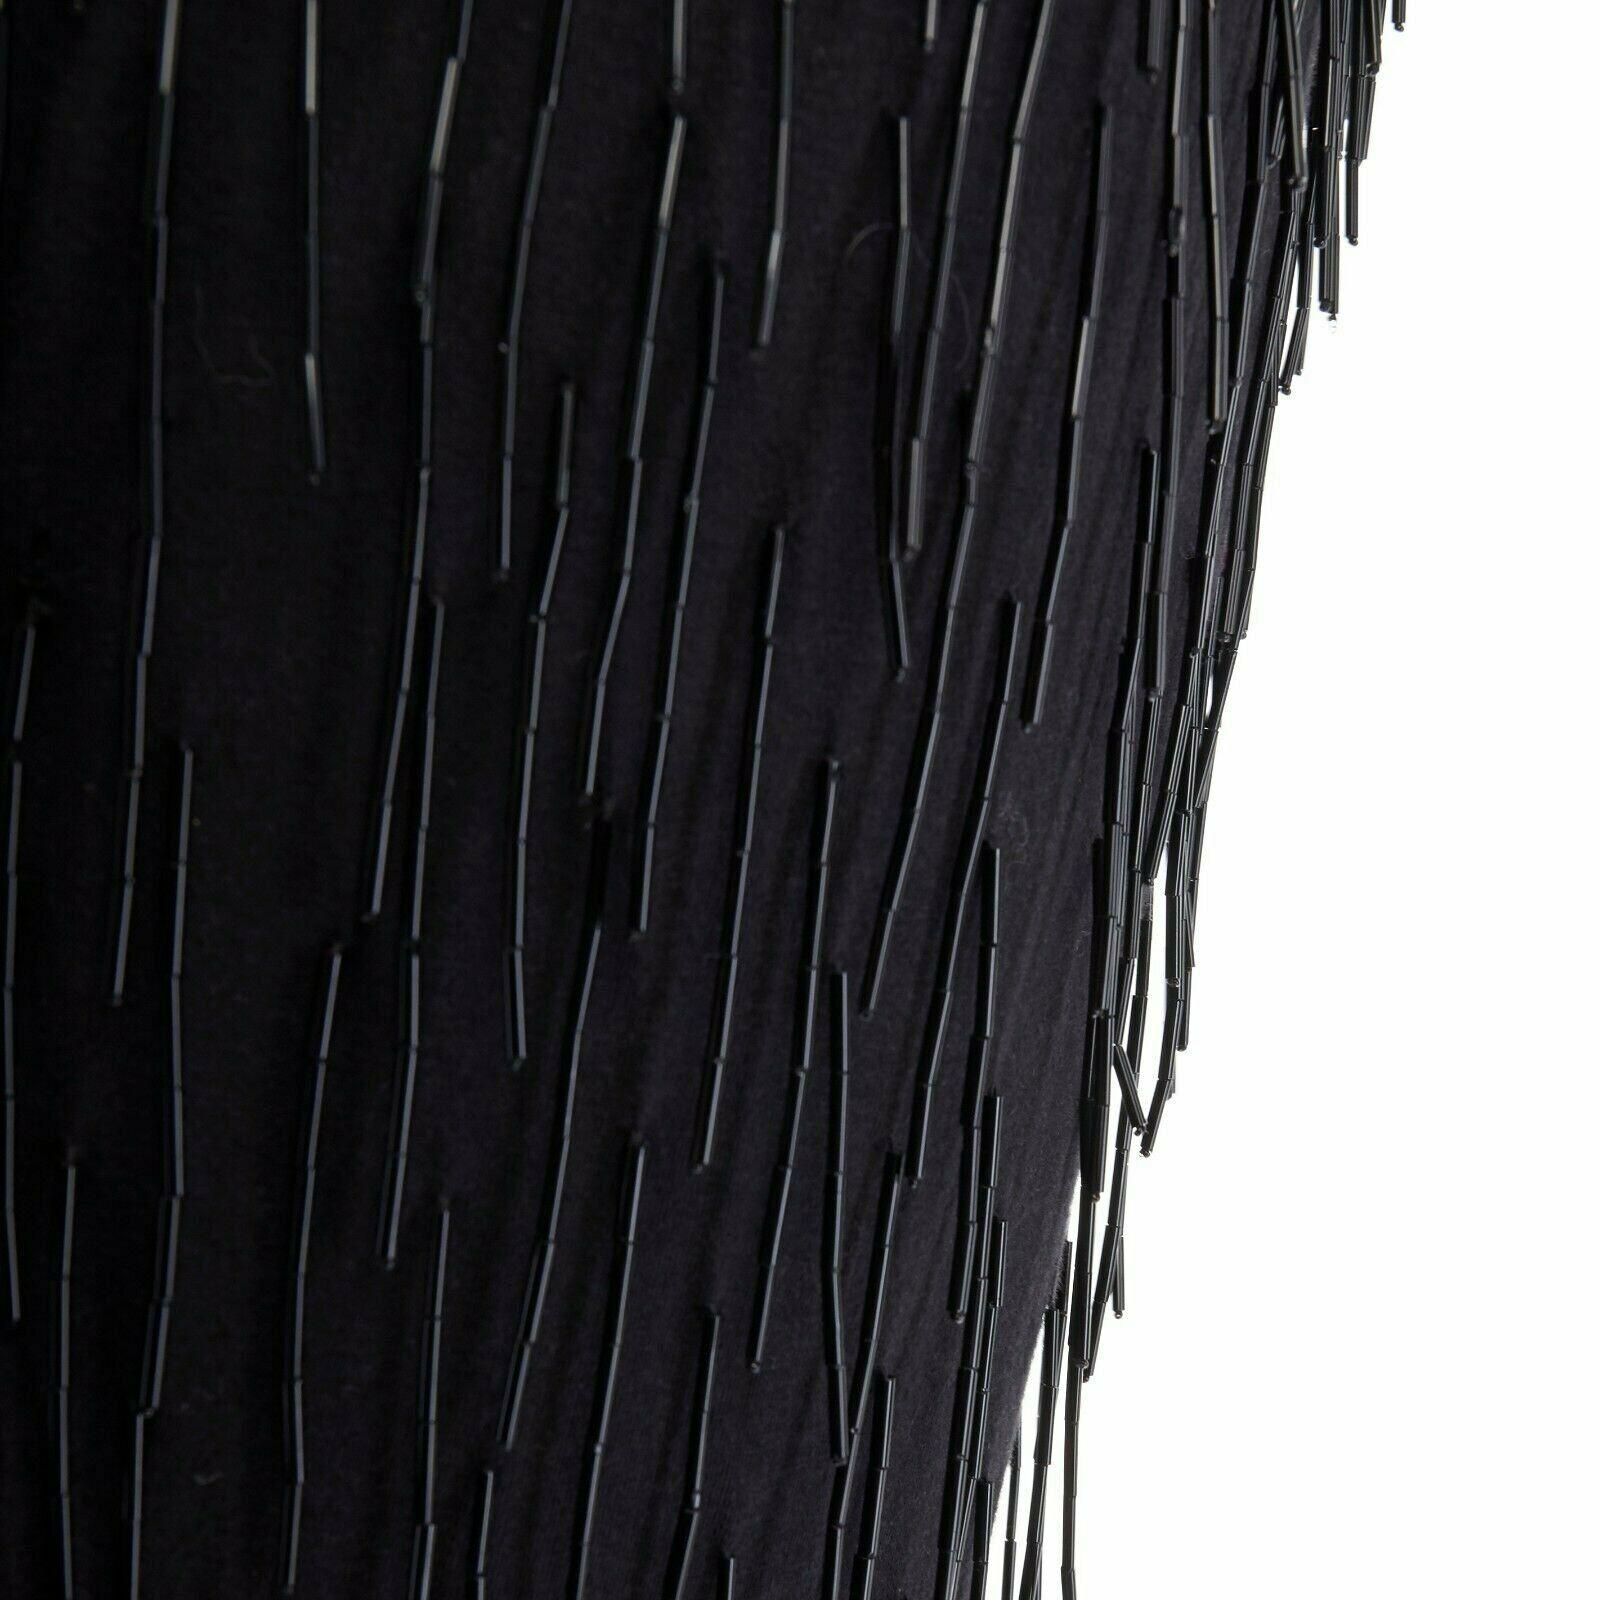 LANVIN ALBER ELBAZ black beaded fringe embellished flapper silk dress FR34 XS 4